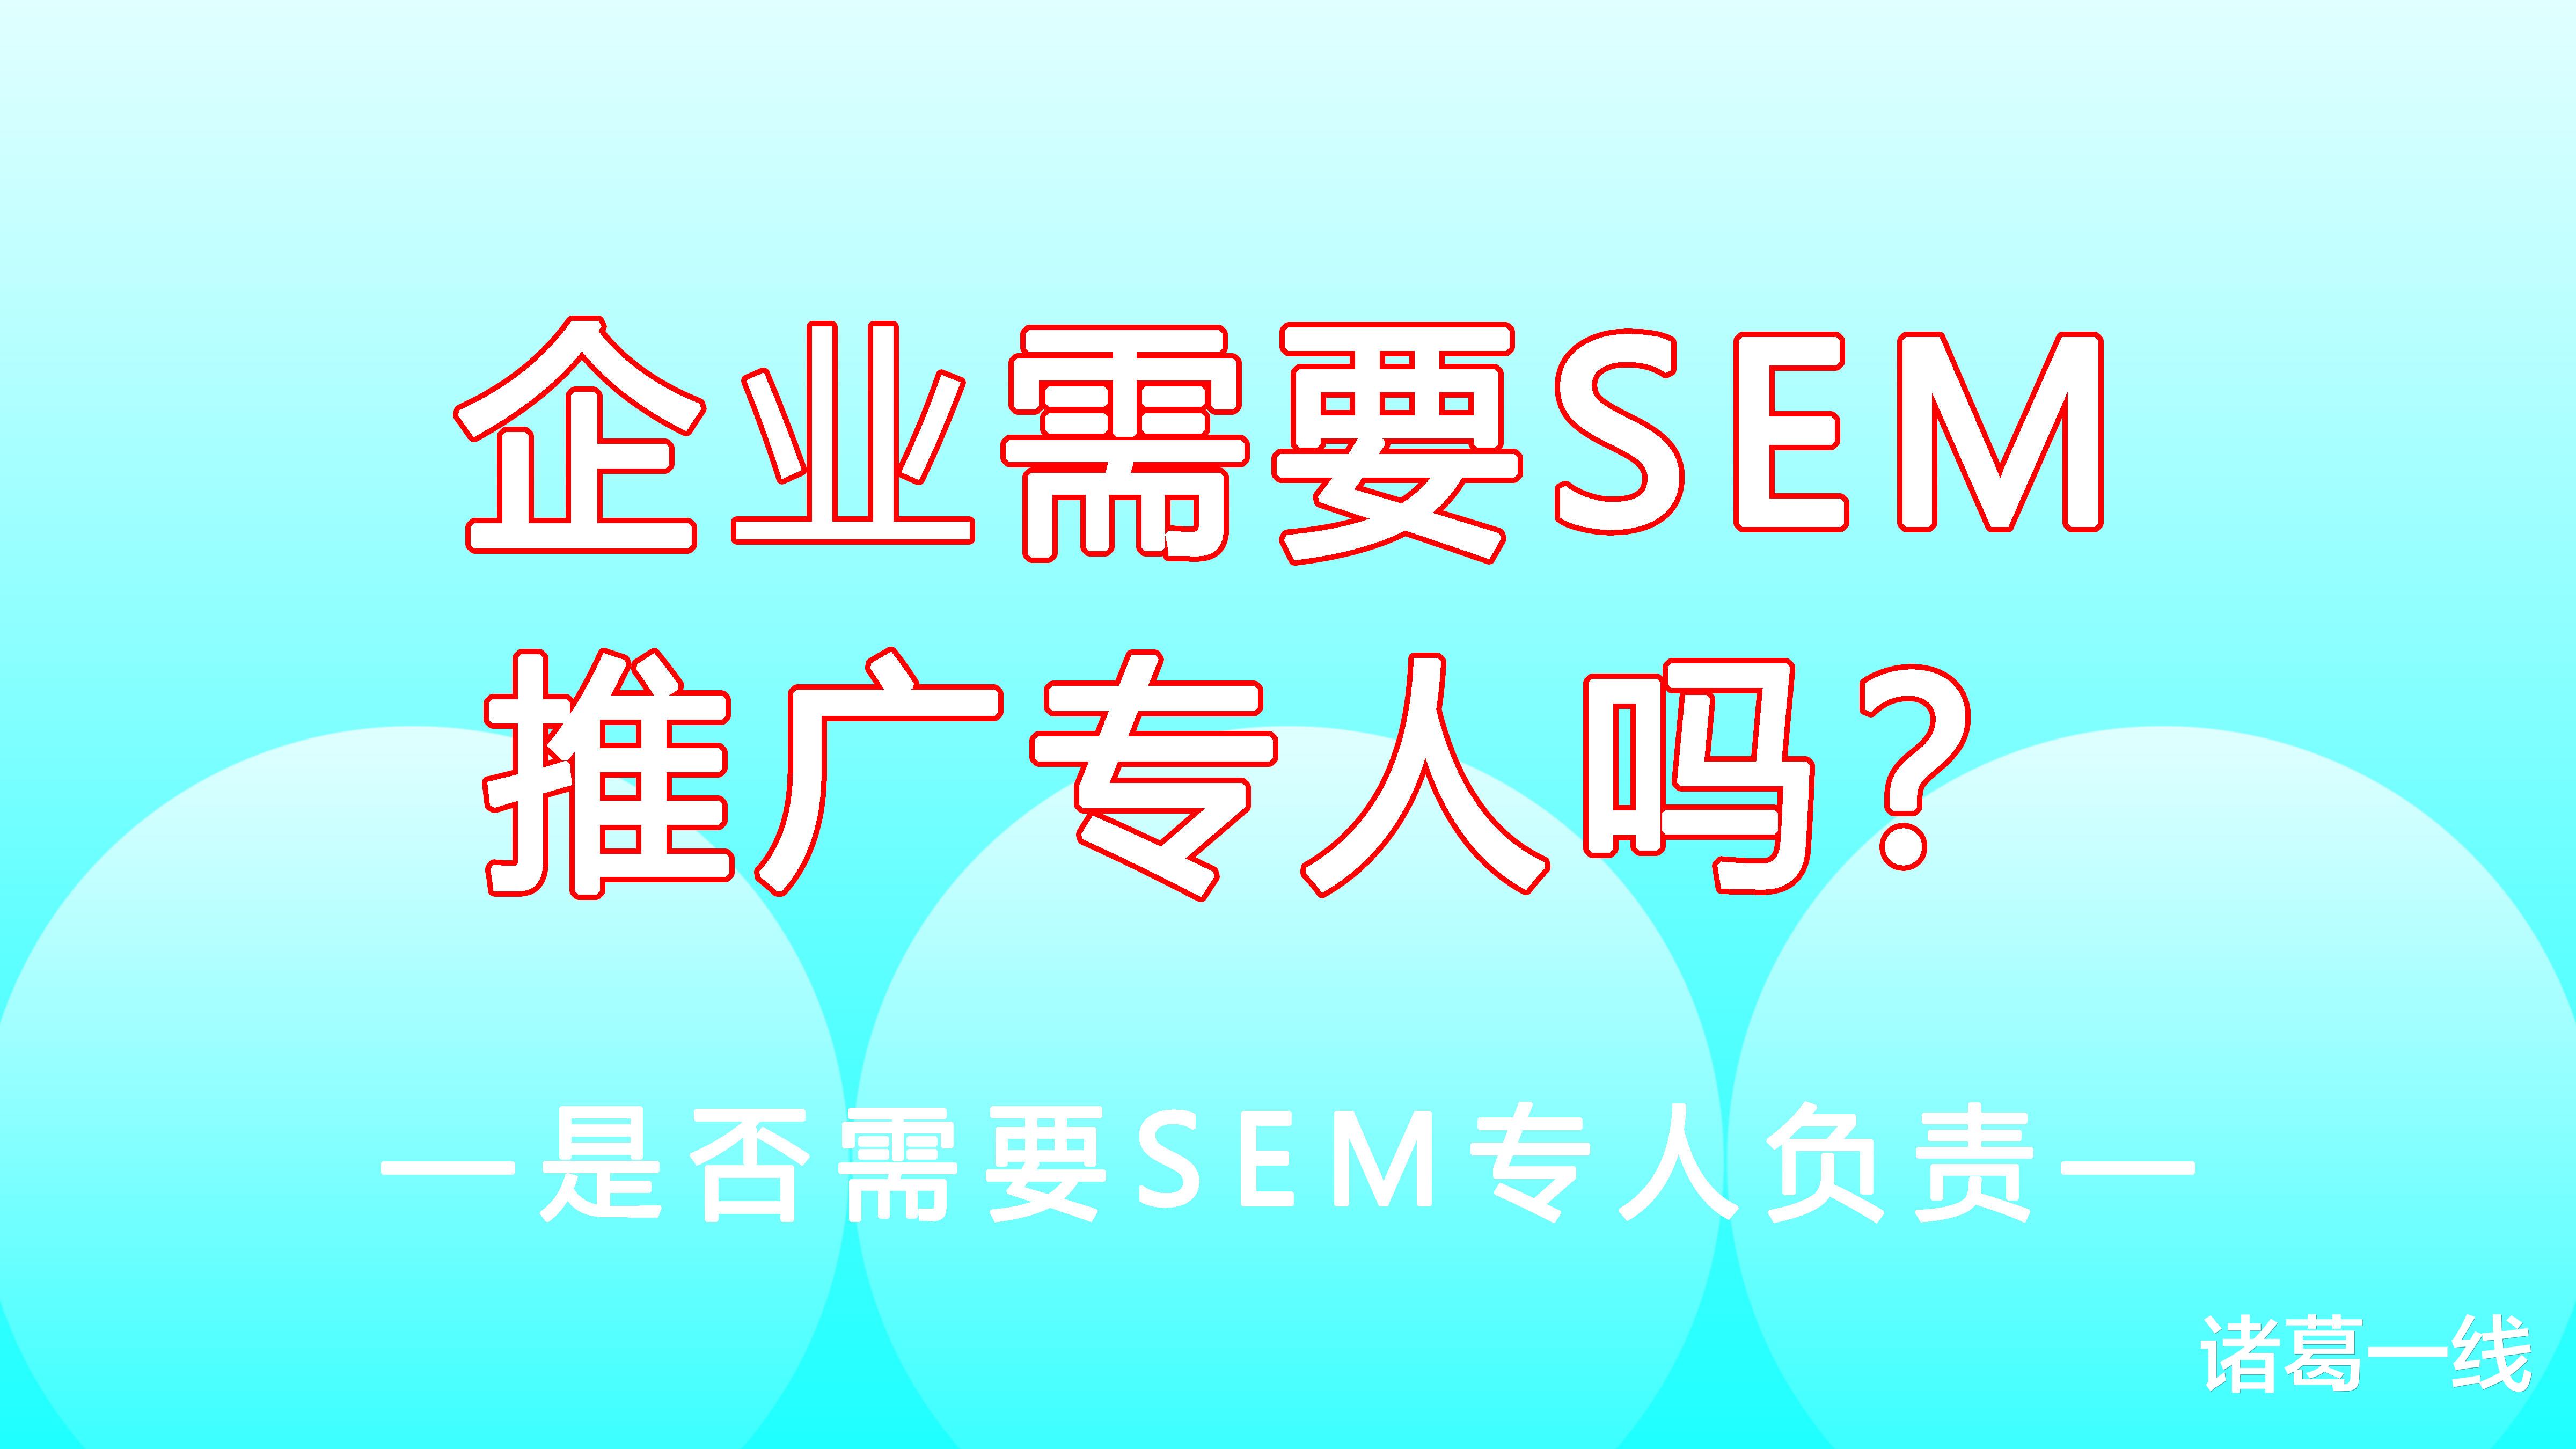 伊隆·马斯克|做SEM搜索引擎的推广需要专人负责吗？